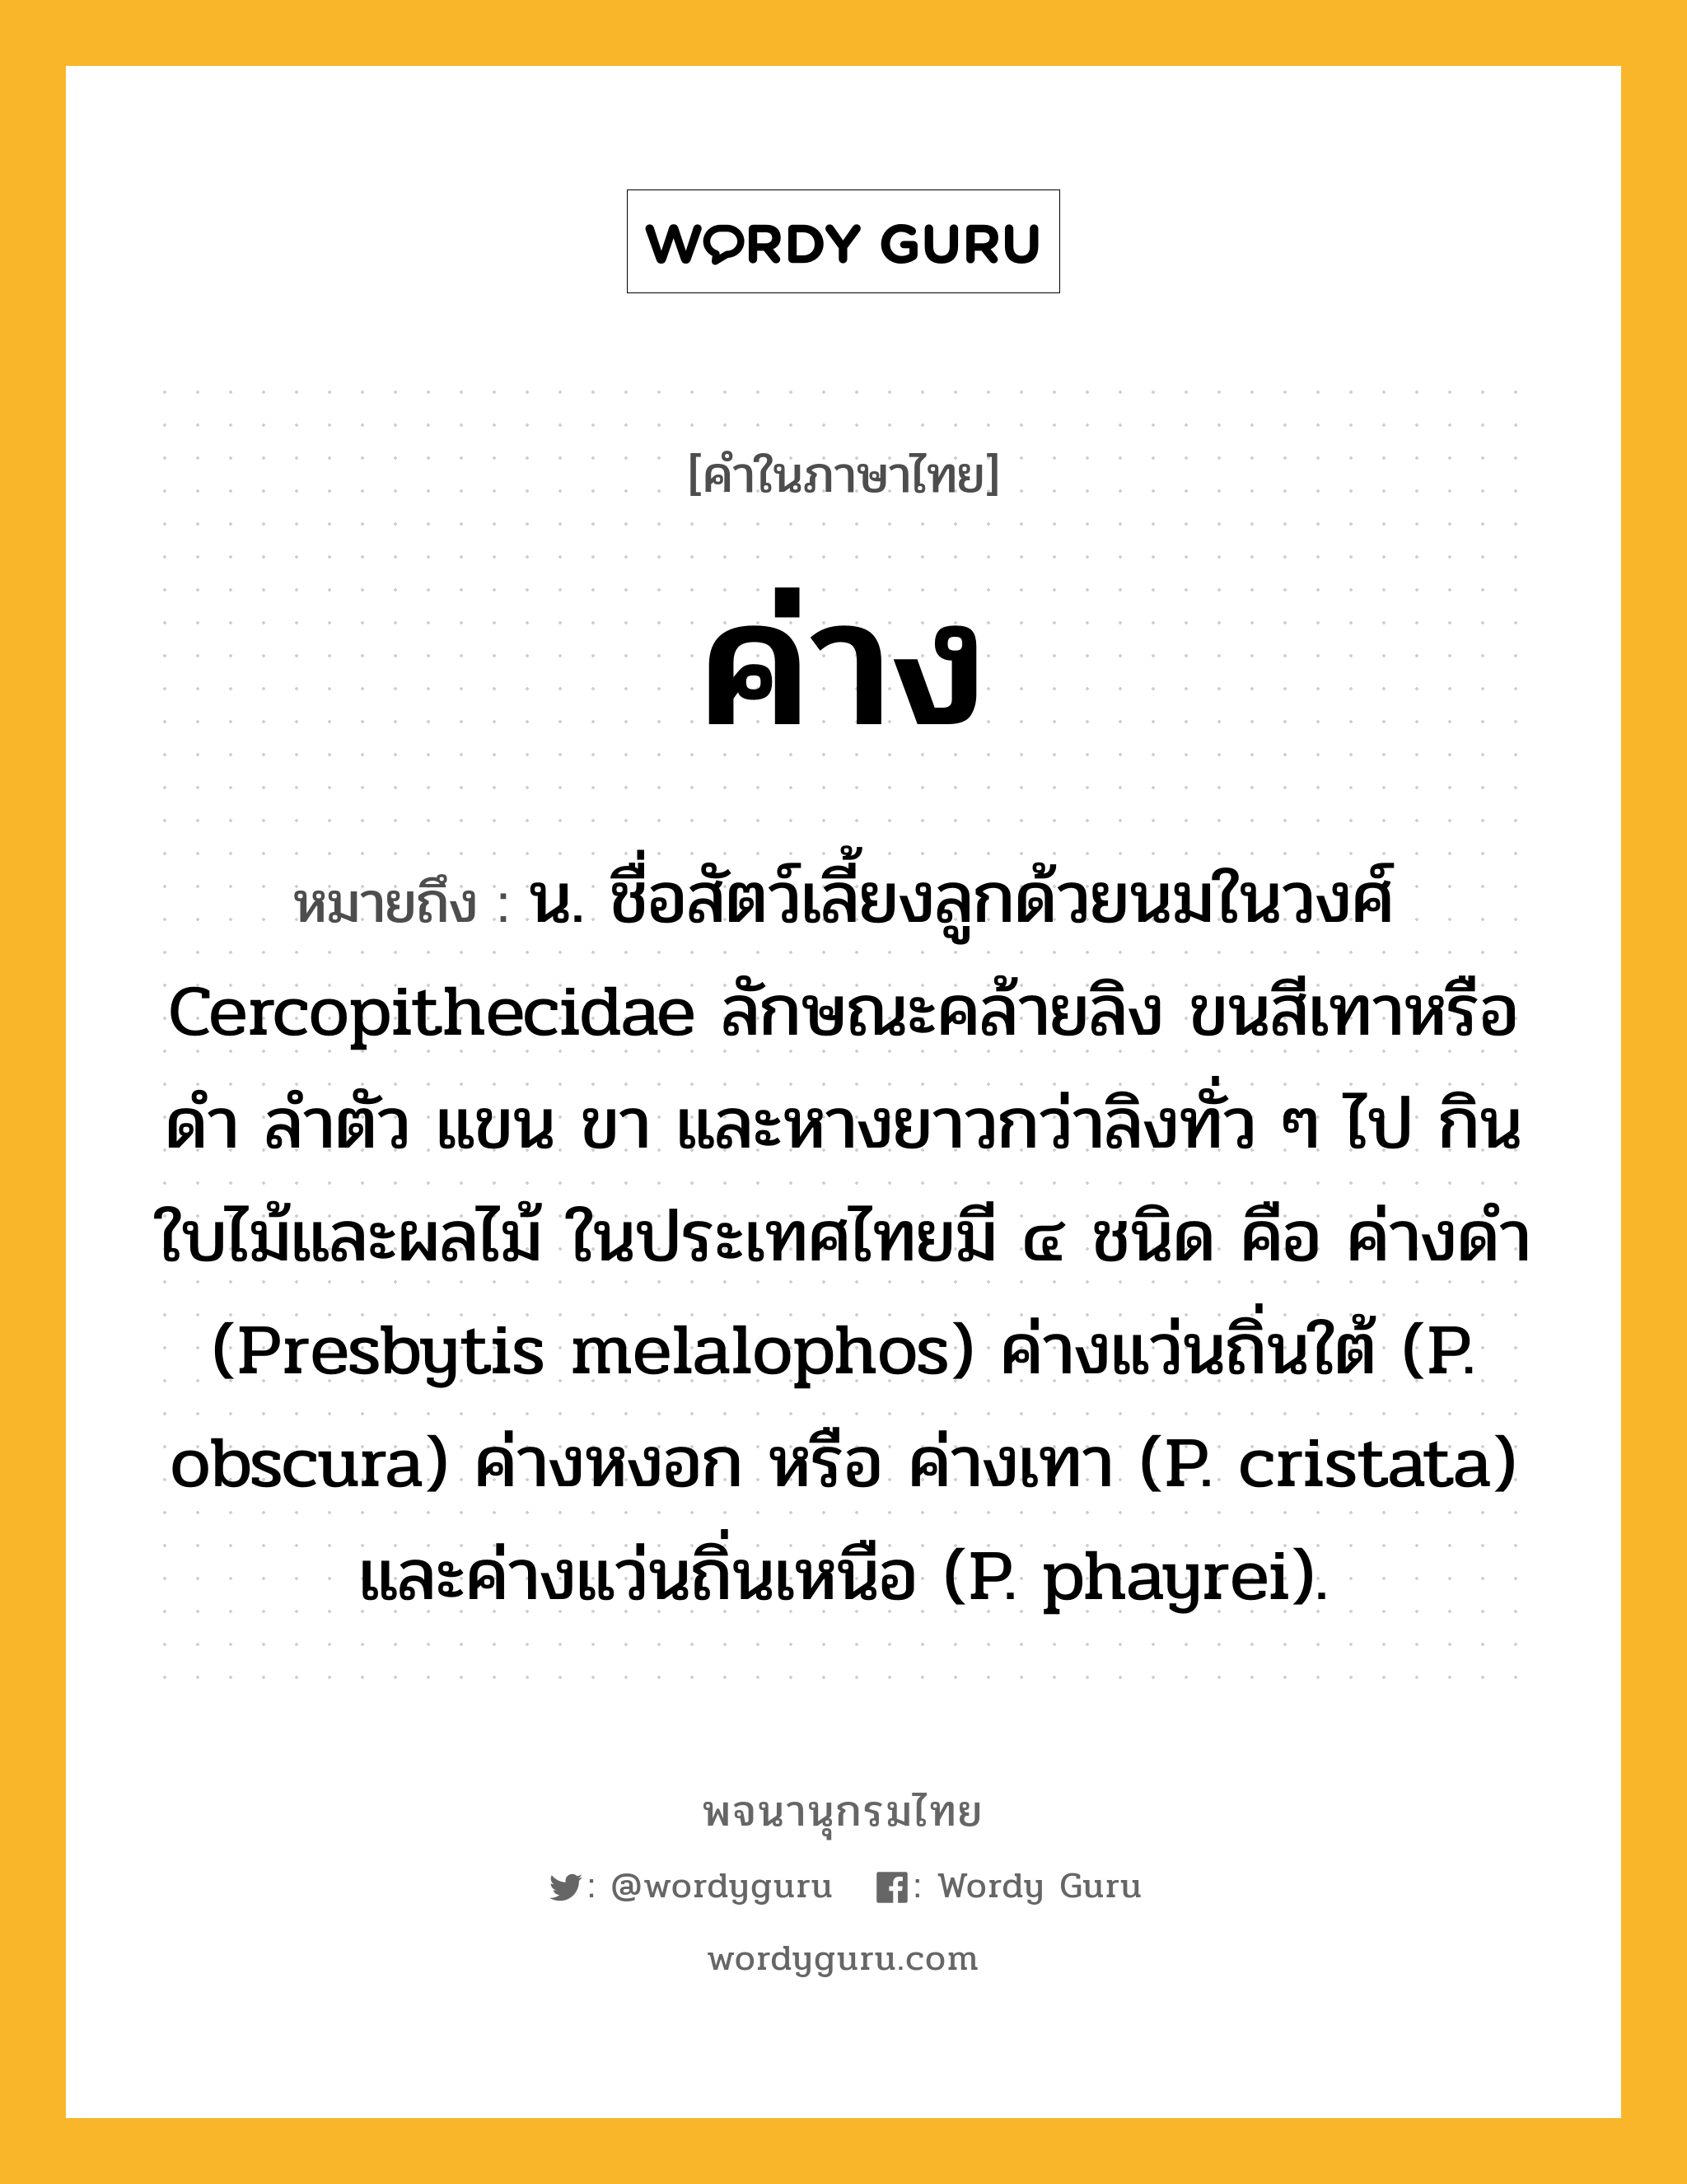 ค่าง ความหมาย หมายถึงอะไร?, คำในภาษาไทย ค่าง หมายถึง น. ชื่อสัตว์เลี้ยงลูกด้วยนมในวงศ์ Cercopithecidae ลักษณะคล้ายลิง ขนสีเทาหรือดํา ลําตัว แขน ขา และหางยาวกว่าลิงทั่ว ๆ ไป กินใบไม้และผลไม้ ในประเทศไทยมี ๔ ชนิด คือ ค่างดํา (Presbytis melalophos) ค่างแว่นถิ่นใต้ (P. obscura) ค่างหงอก หรือ ค่างเทา (P. cristata) และค่างแว่นถิ่นเหนือ (P. phayrei).